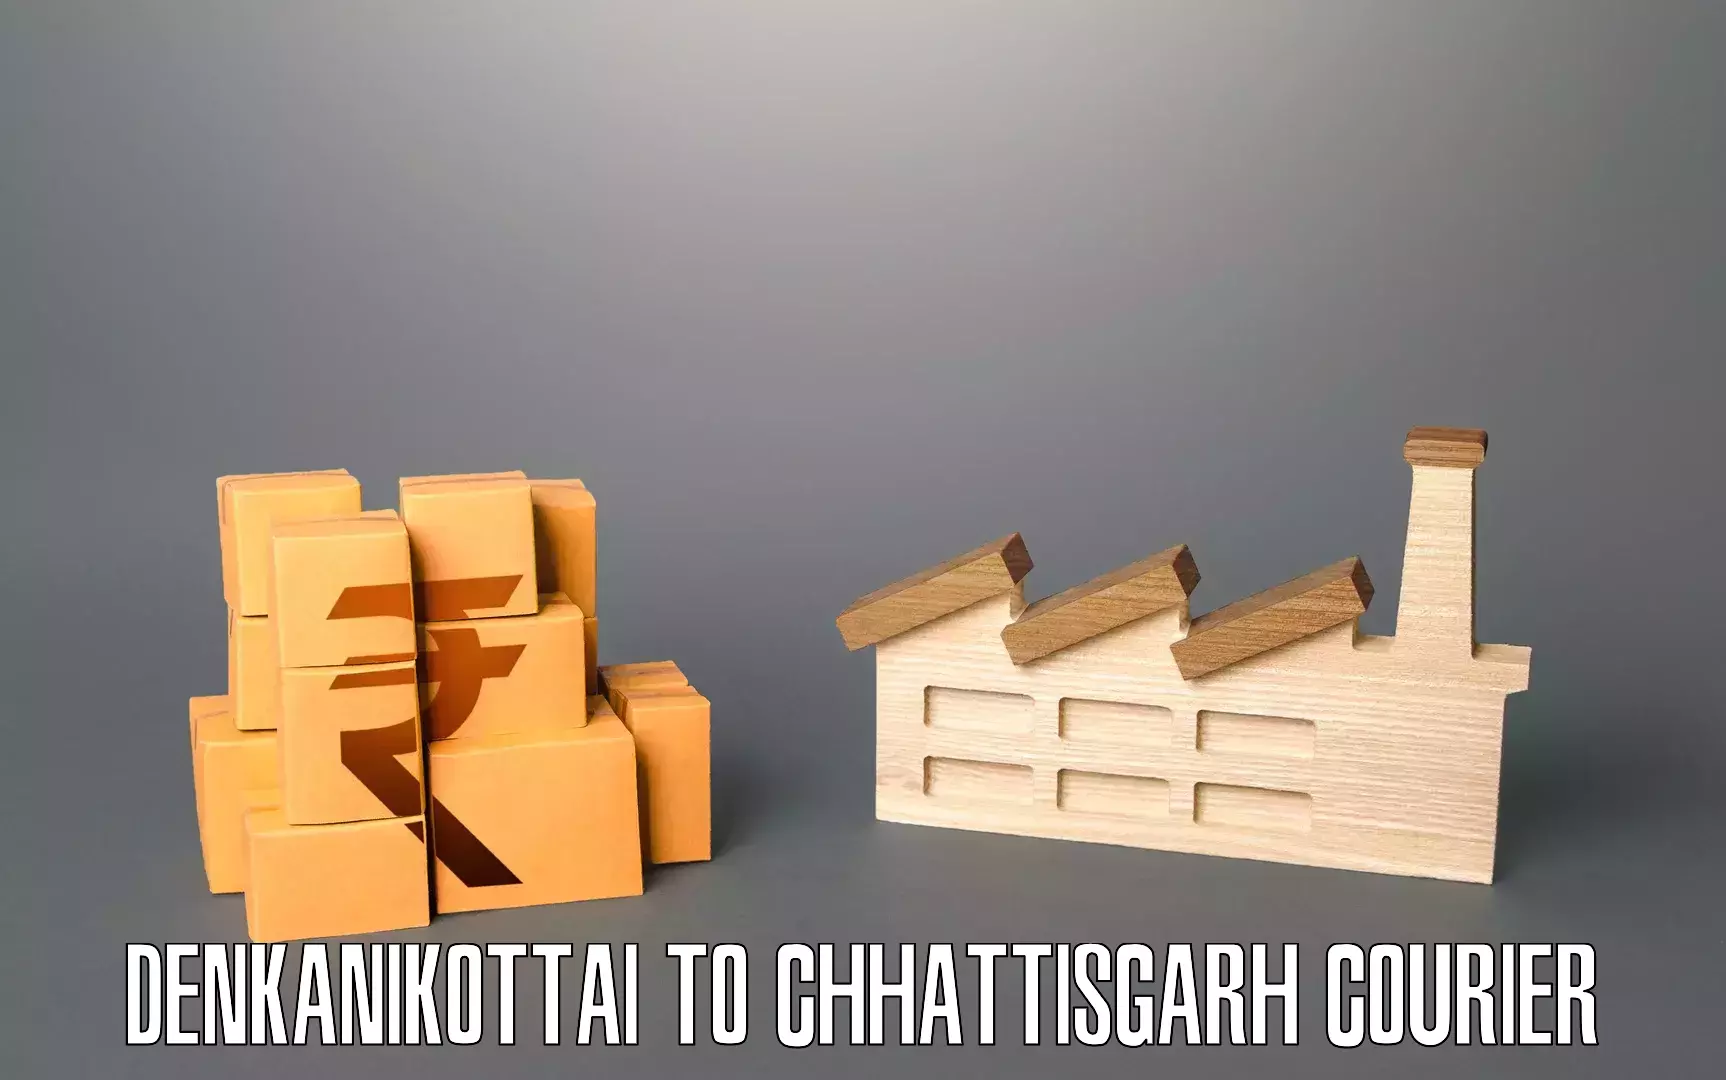 Specialized furniture movers Denkanikottai to Korea Chhattisgarh